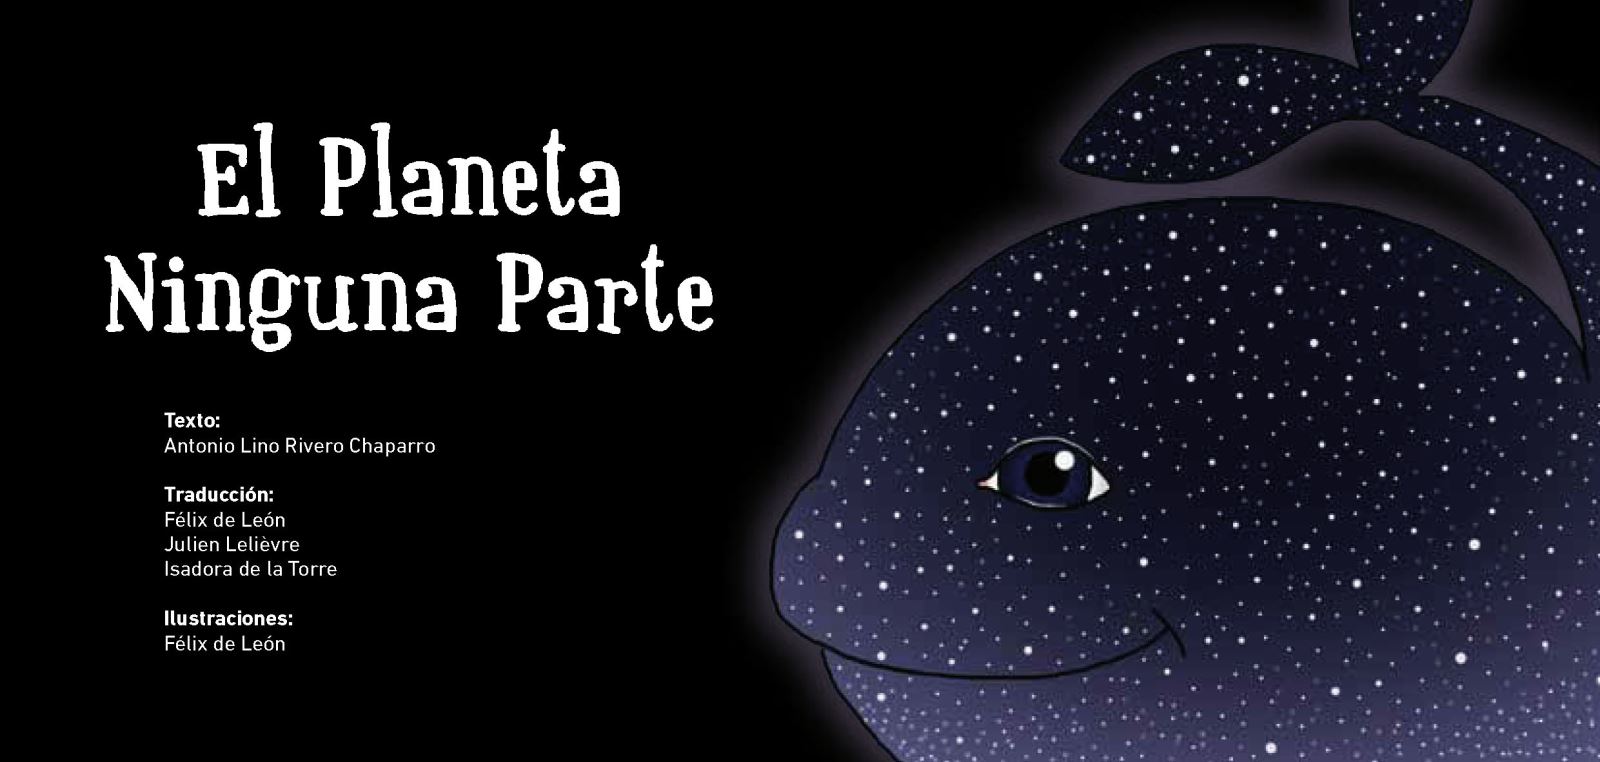 Presentación del libro "EL PLANETA NINGUNA PARTE", de Antonio Lino Rivero Chaparro